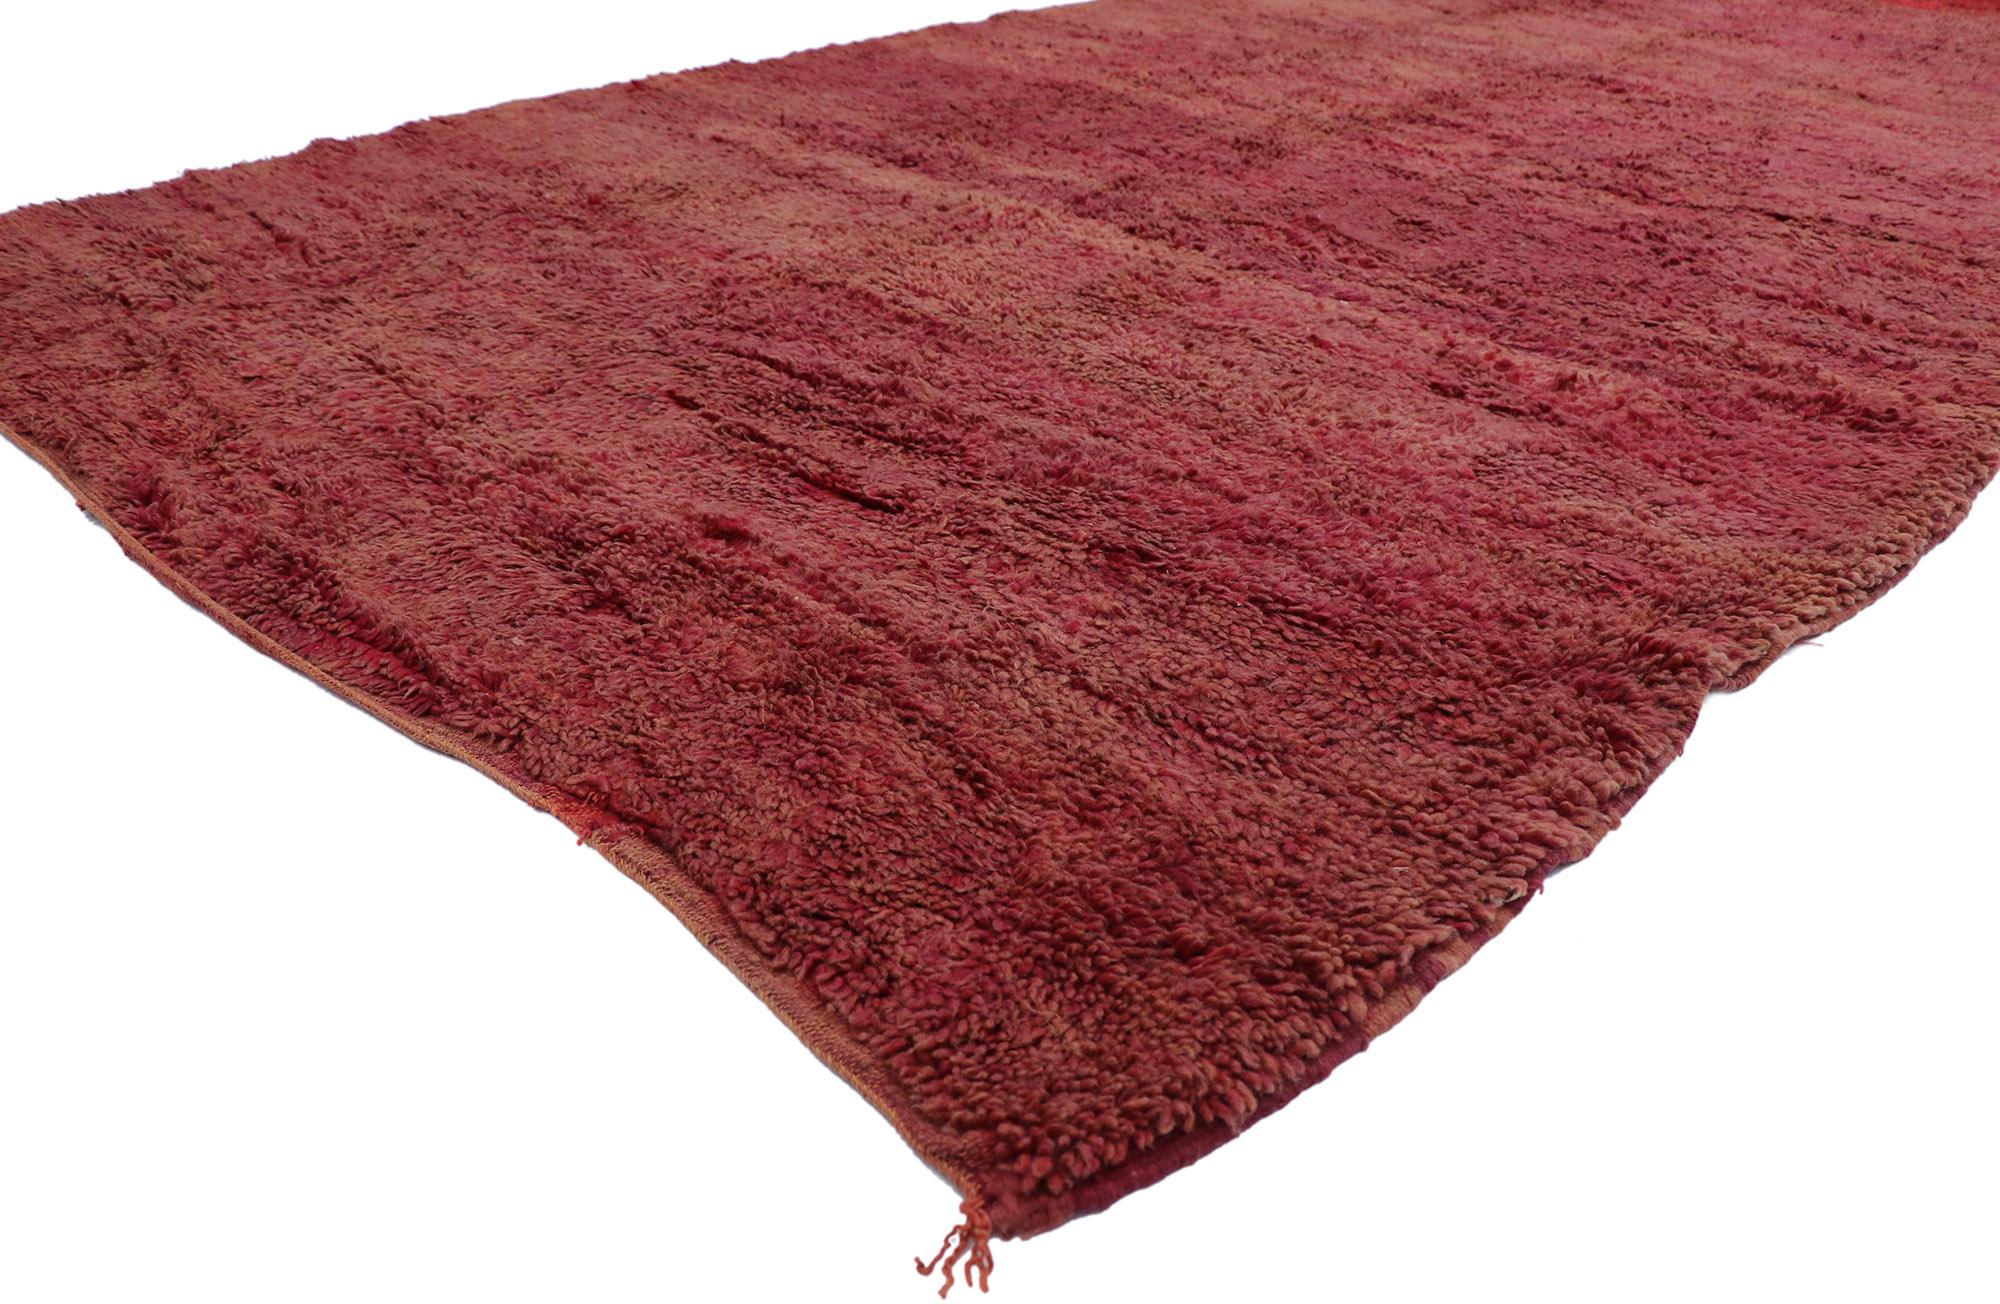 21271 vintage Berber Beni Mrirt tapis marocain avec style bohème 06'08 x 12'09. Avec sa simplicité, ses poils en peluche et son ambiance bohème, ce tapis berbère vintage Beni Mrirt en laine nouée à la main est une vision captivante de la beauté